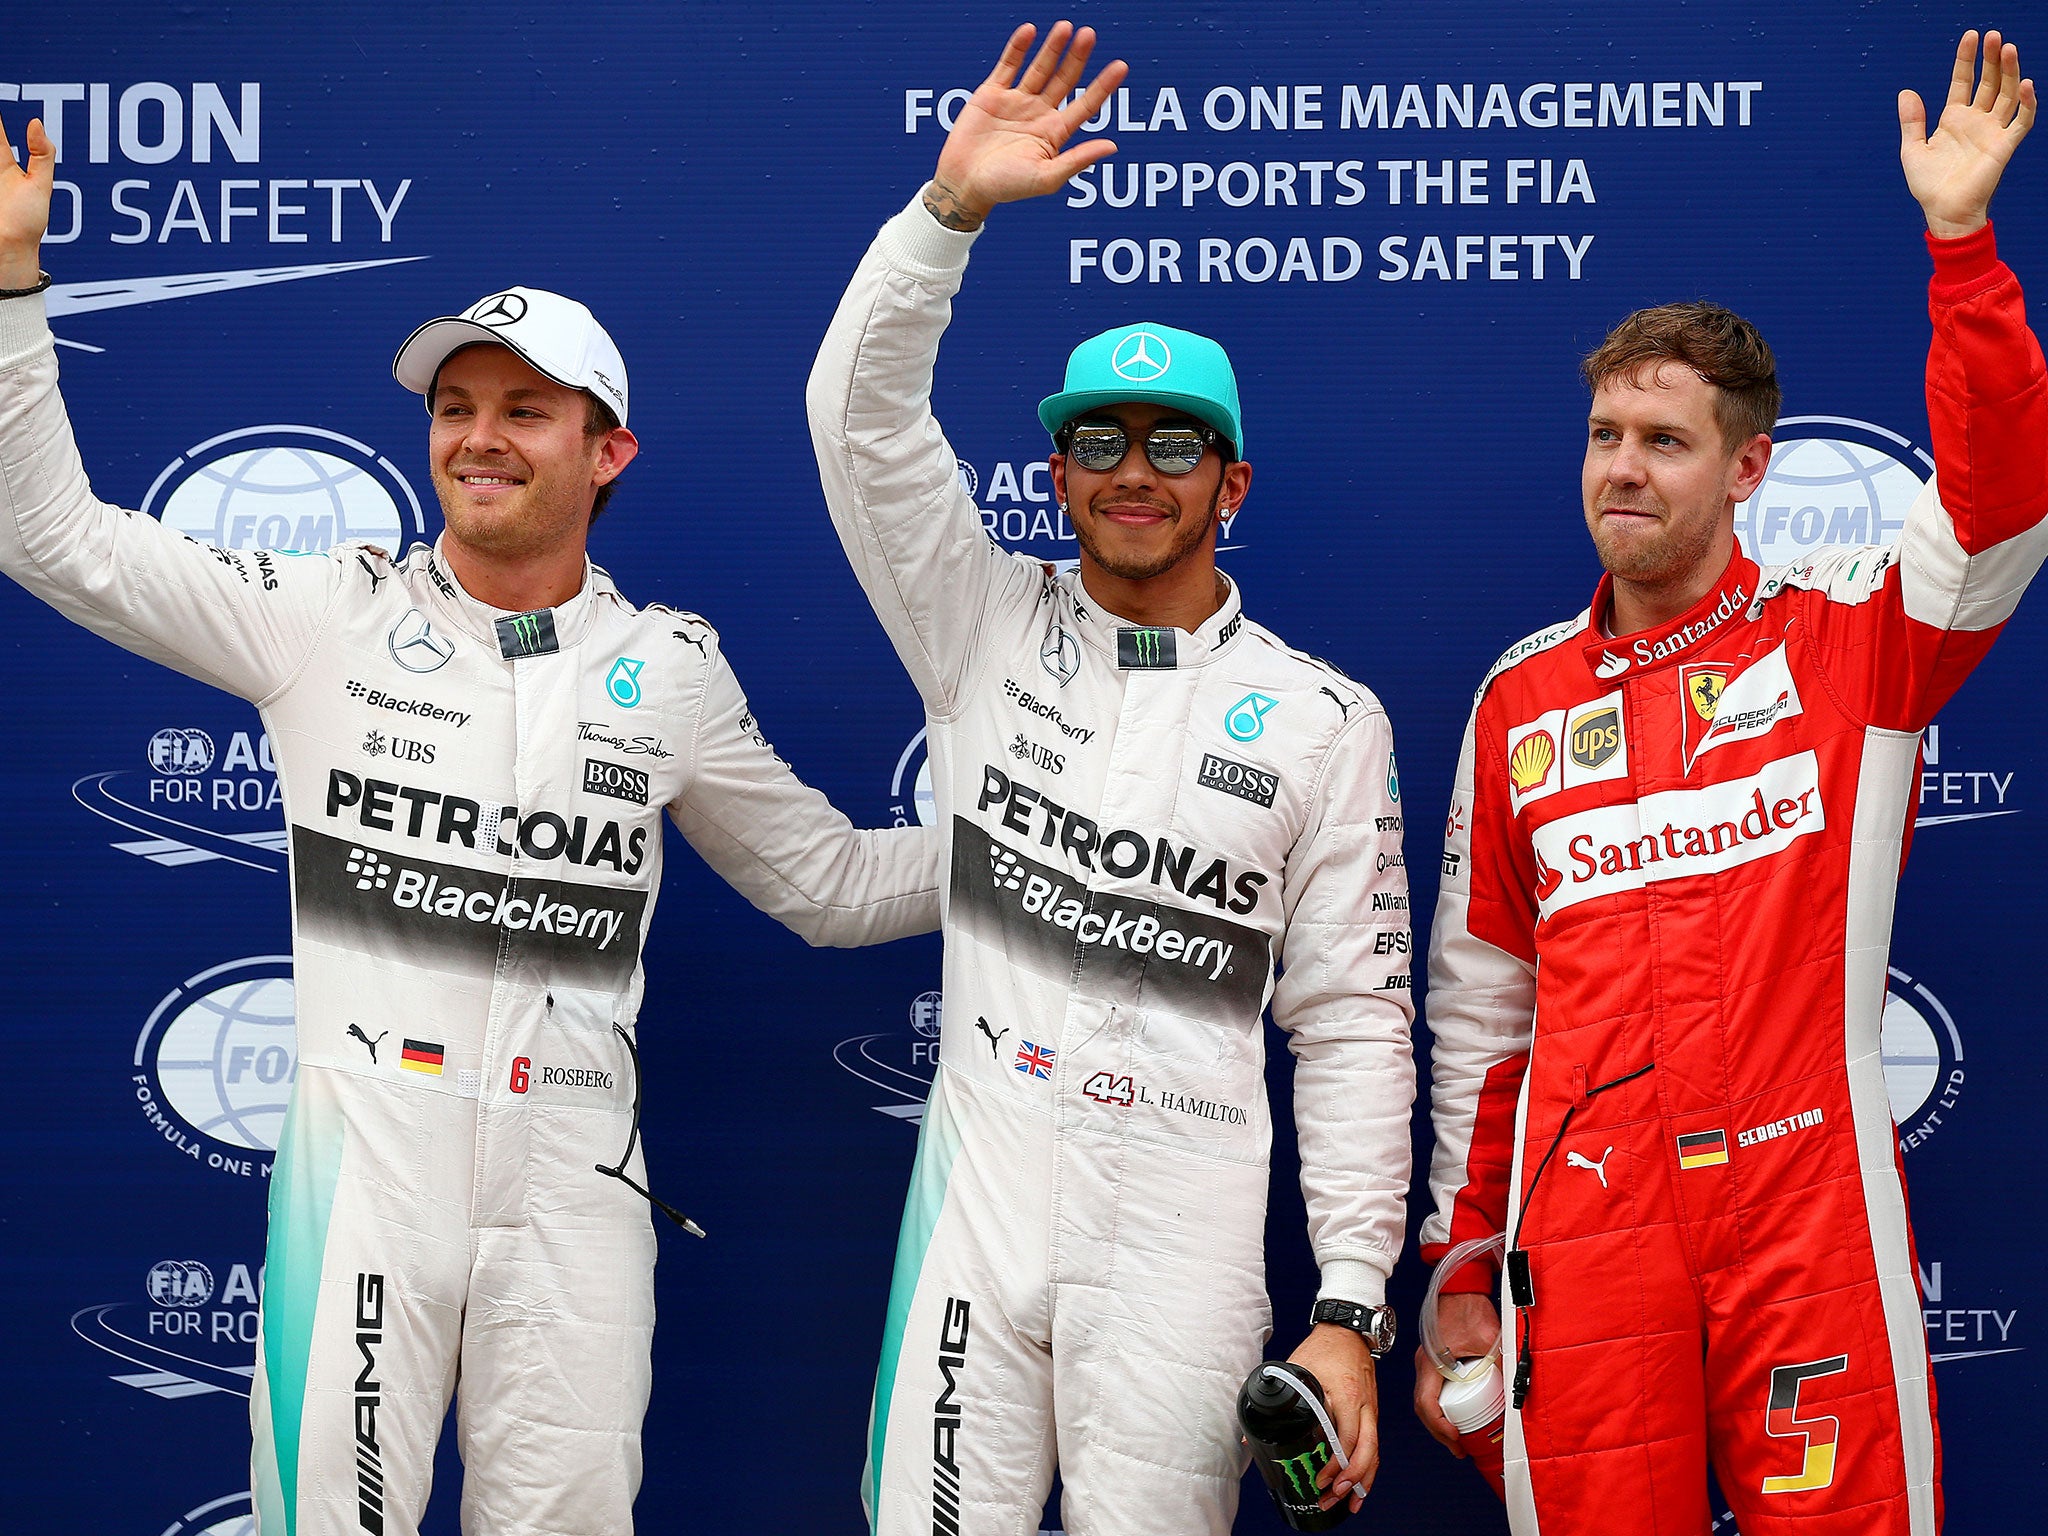 Lewis Hamilton will start on pole ahead of Sebastian Vettel and Nico Rosberg